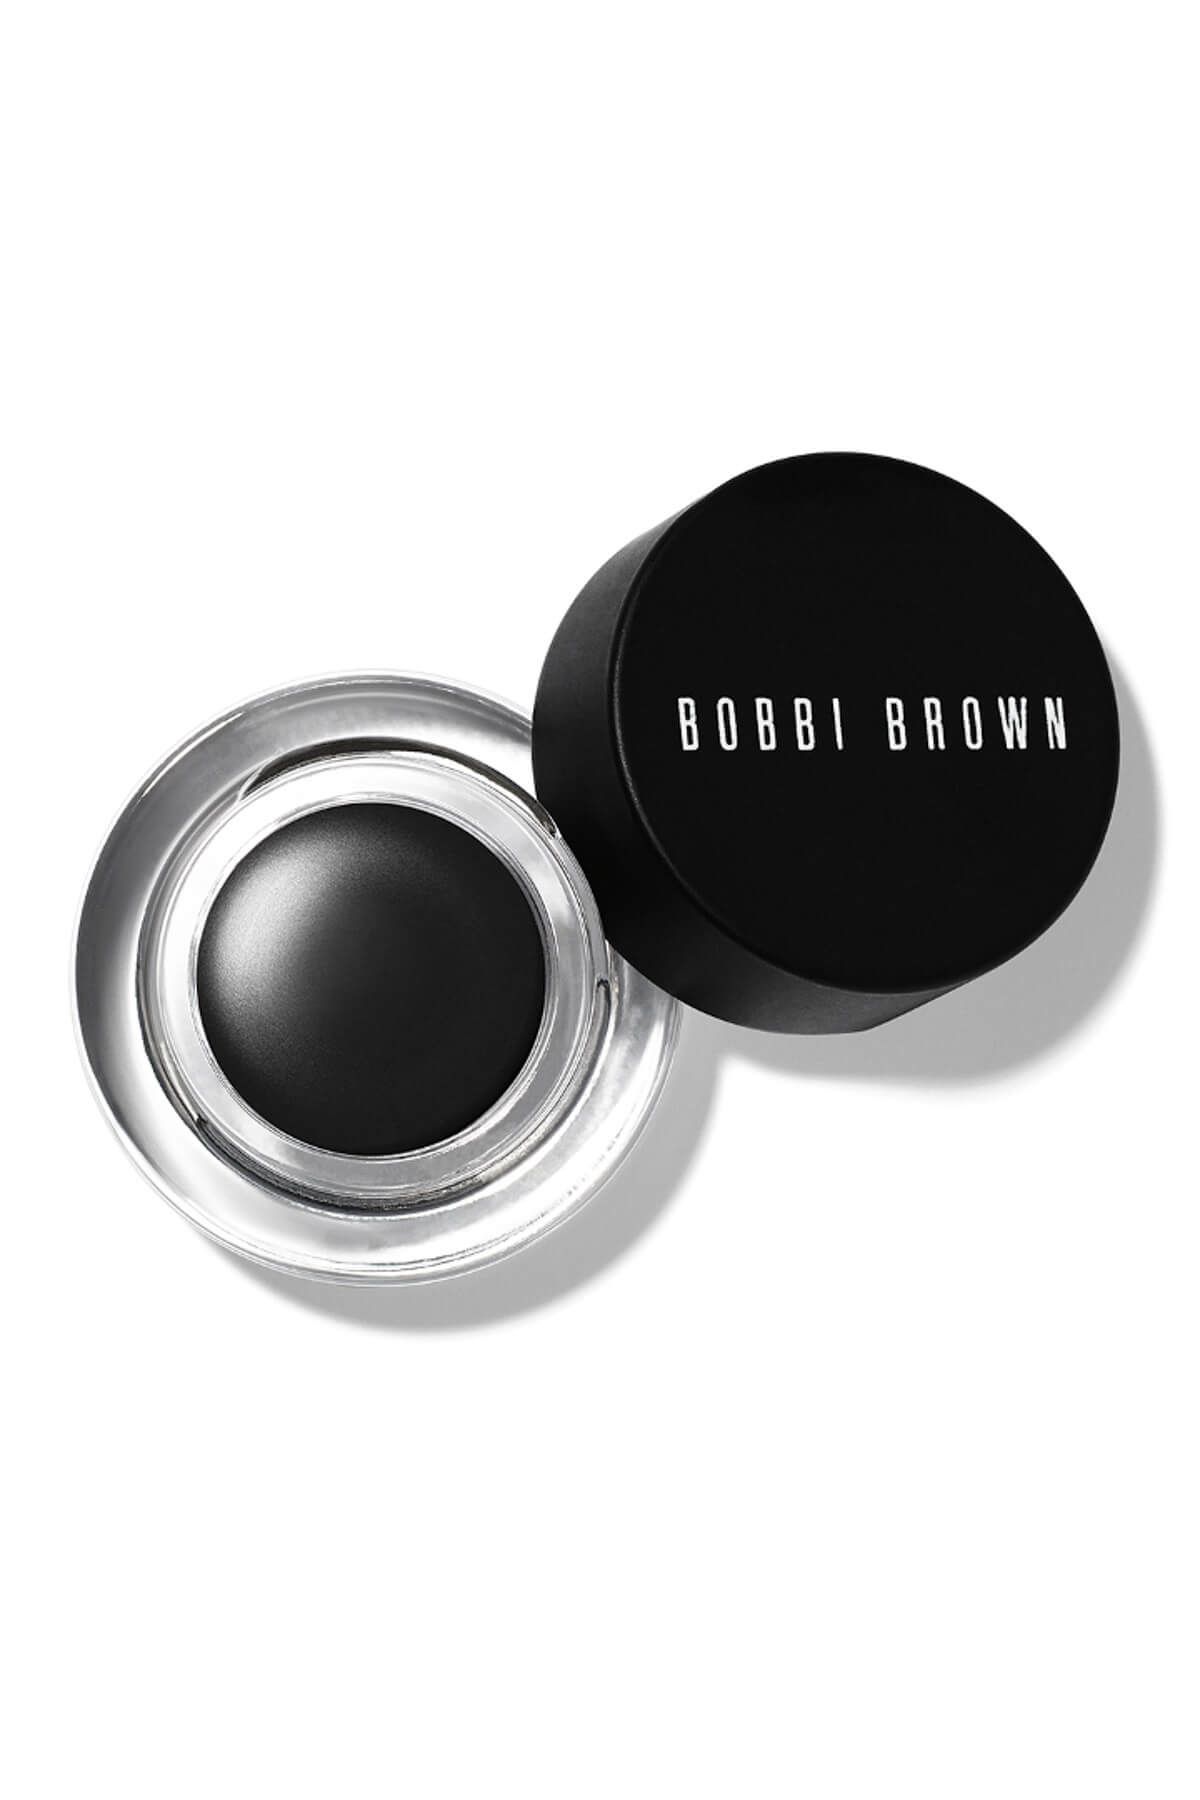 Bobbi Brown Long-wear Gel Eyeliner / Jel Eyeliner 3 G Black Ink 716170007861